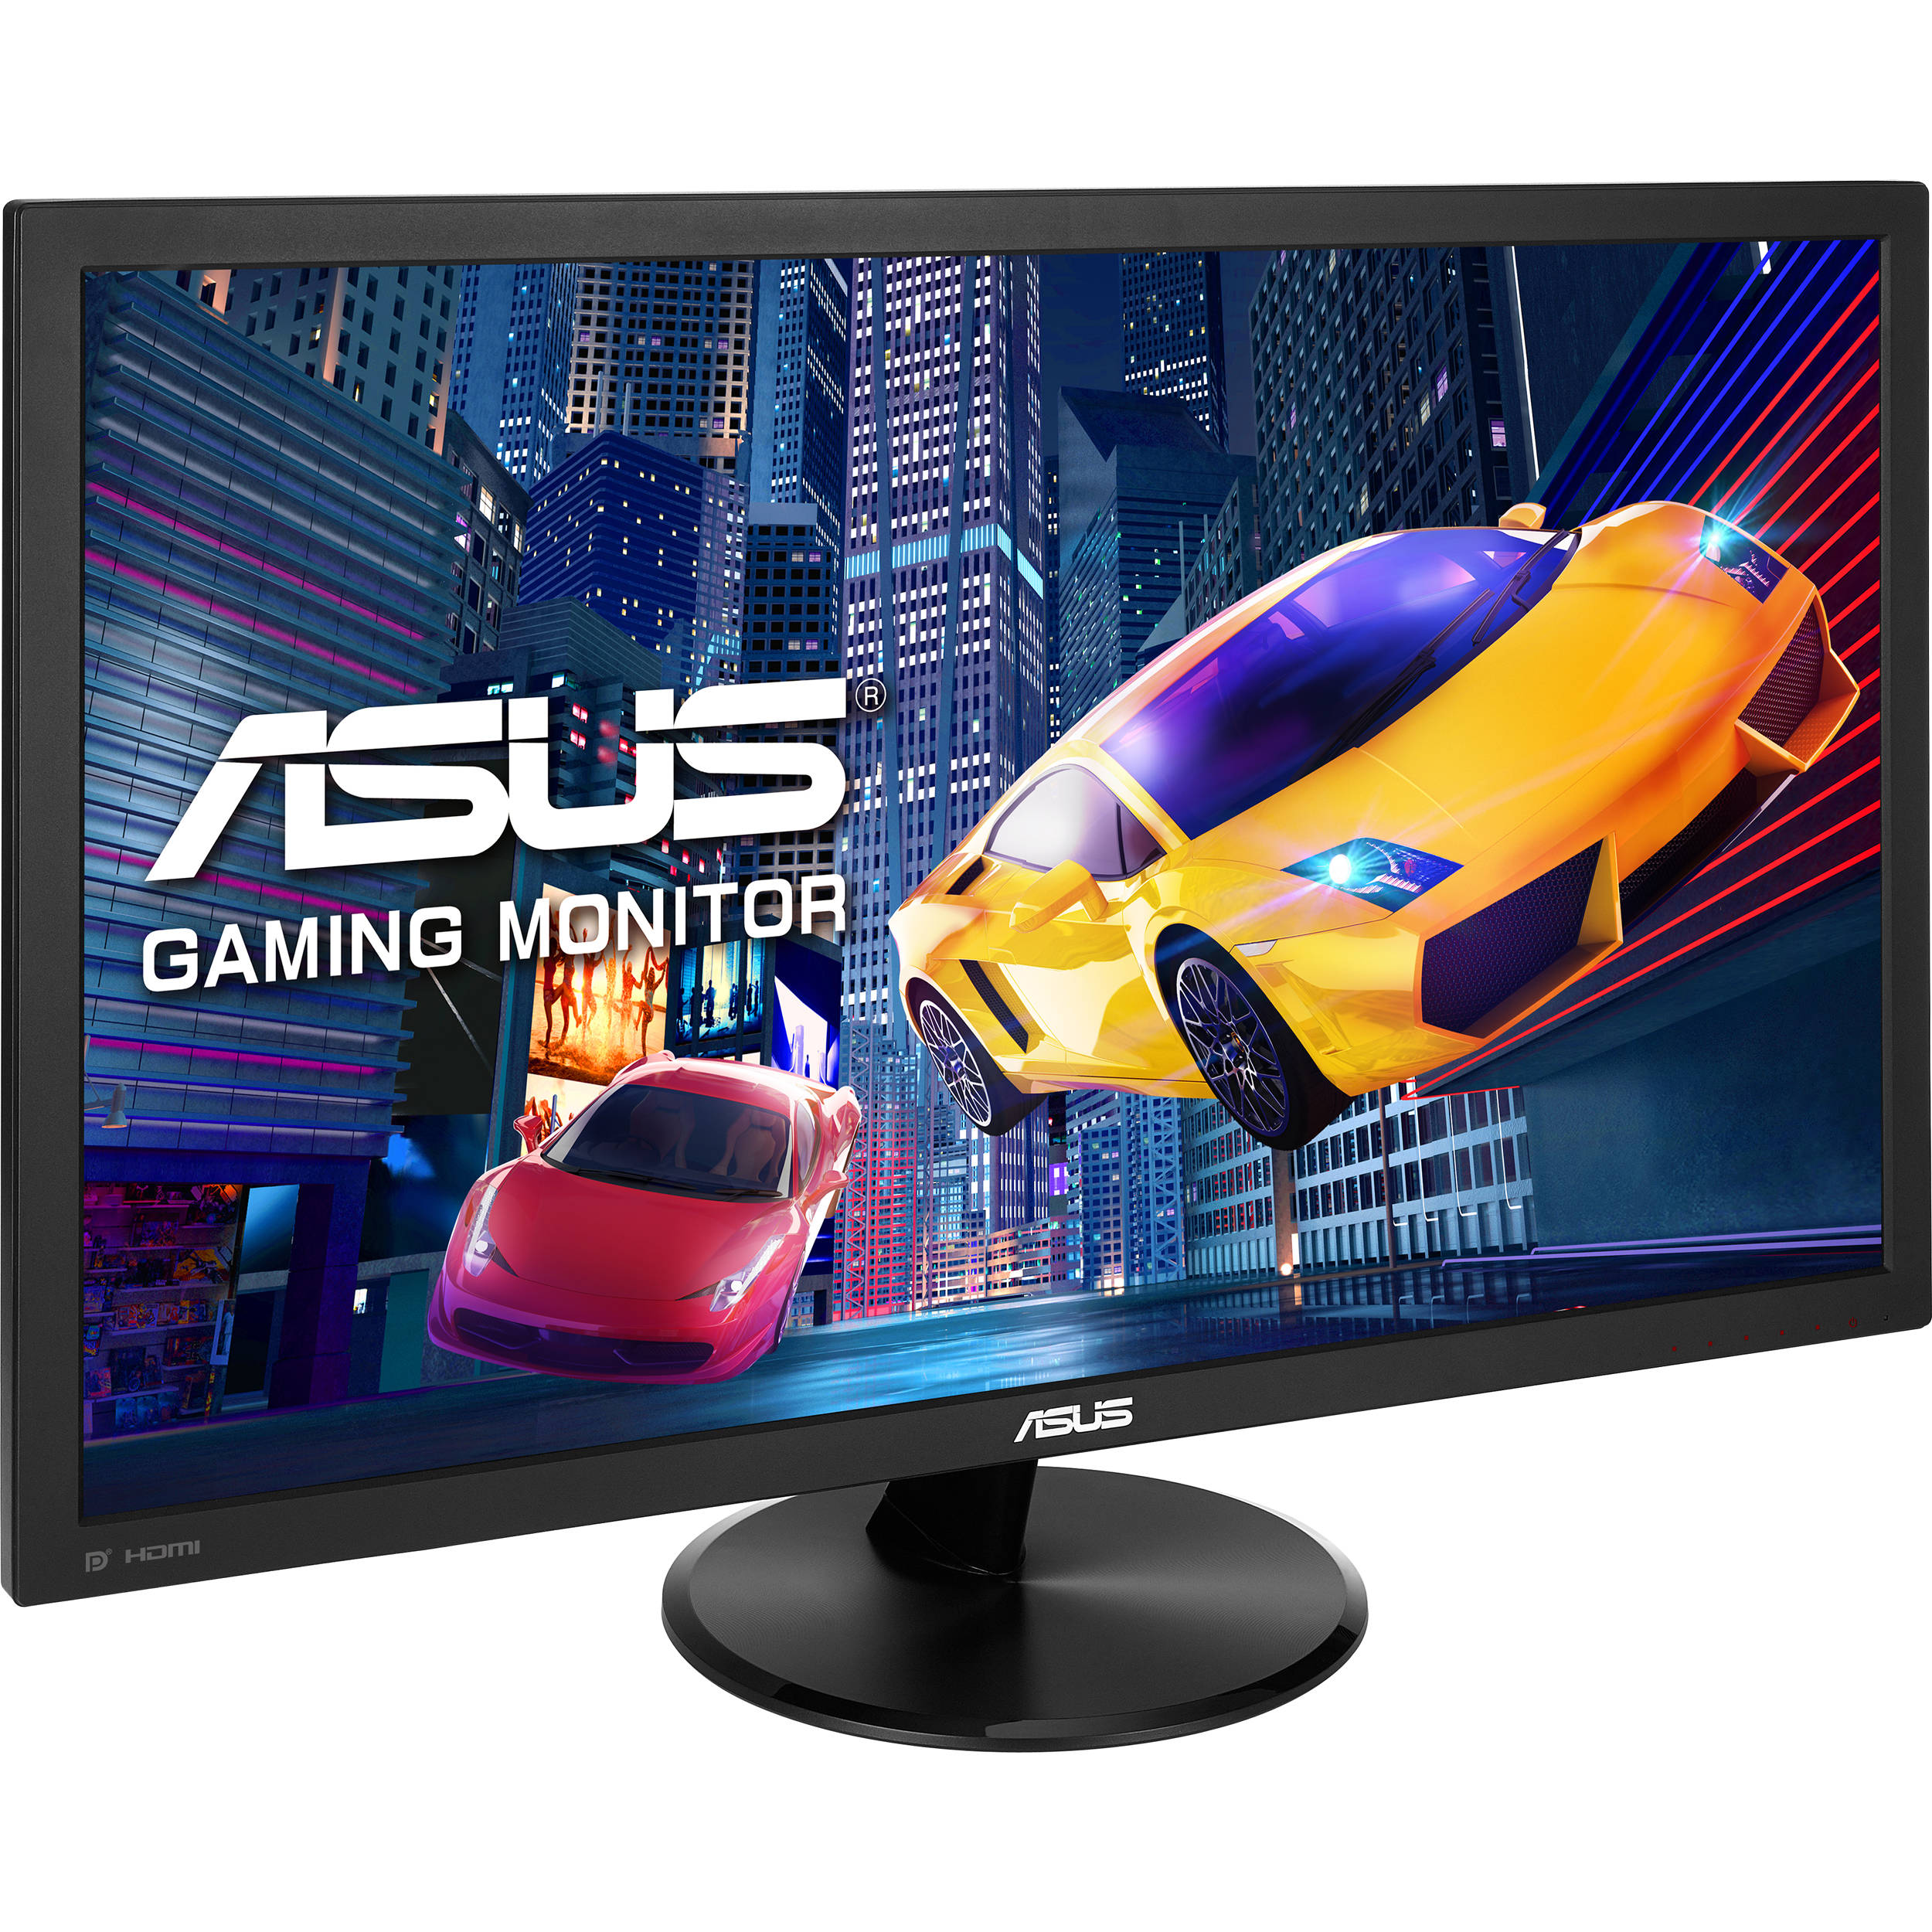 ASUS VP278QG 27" 16:9 LCD Gaming Monitor